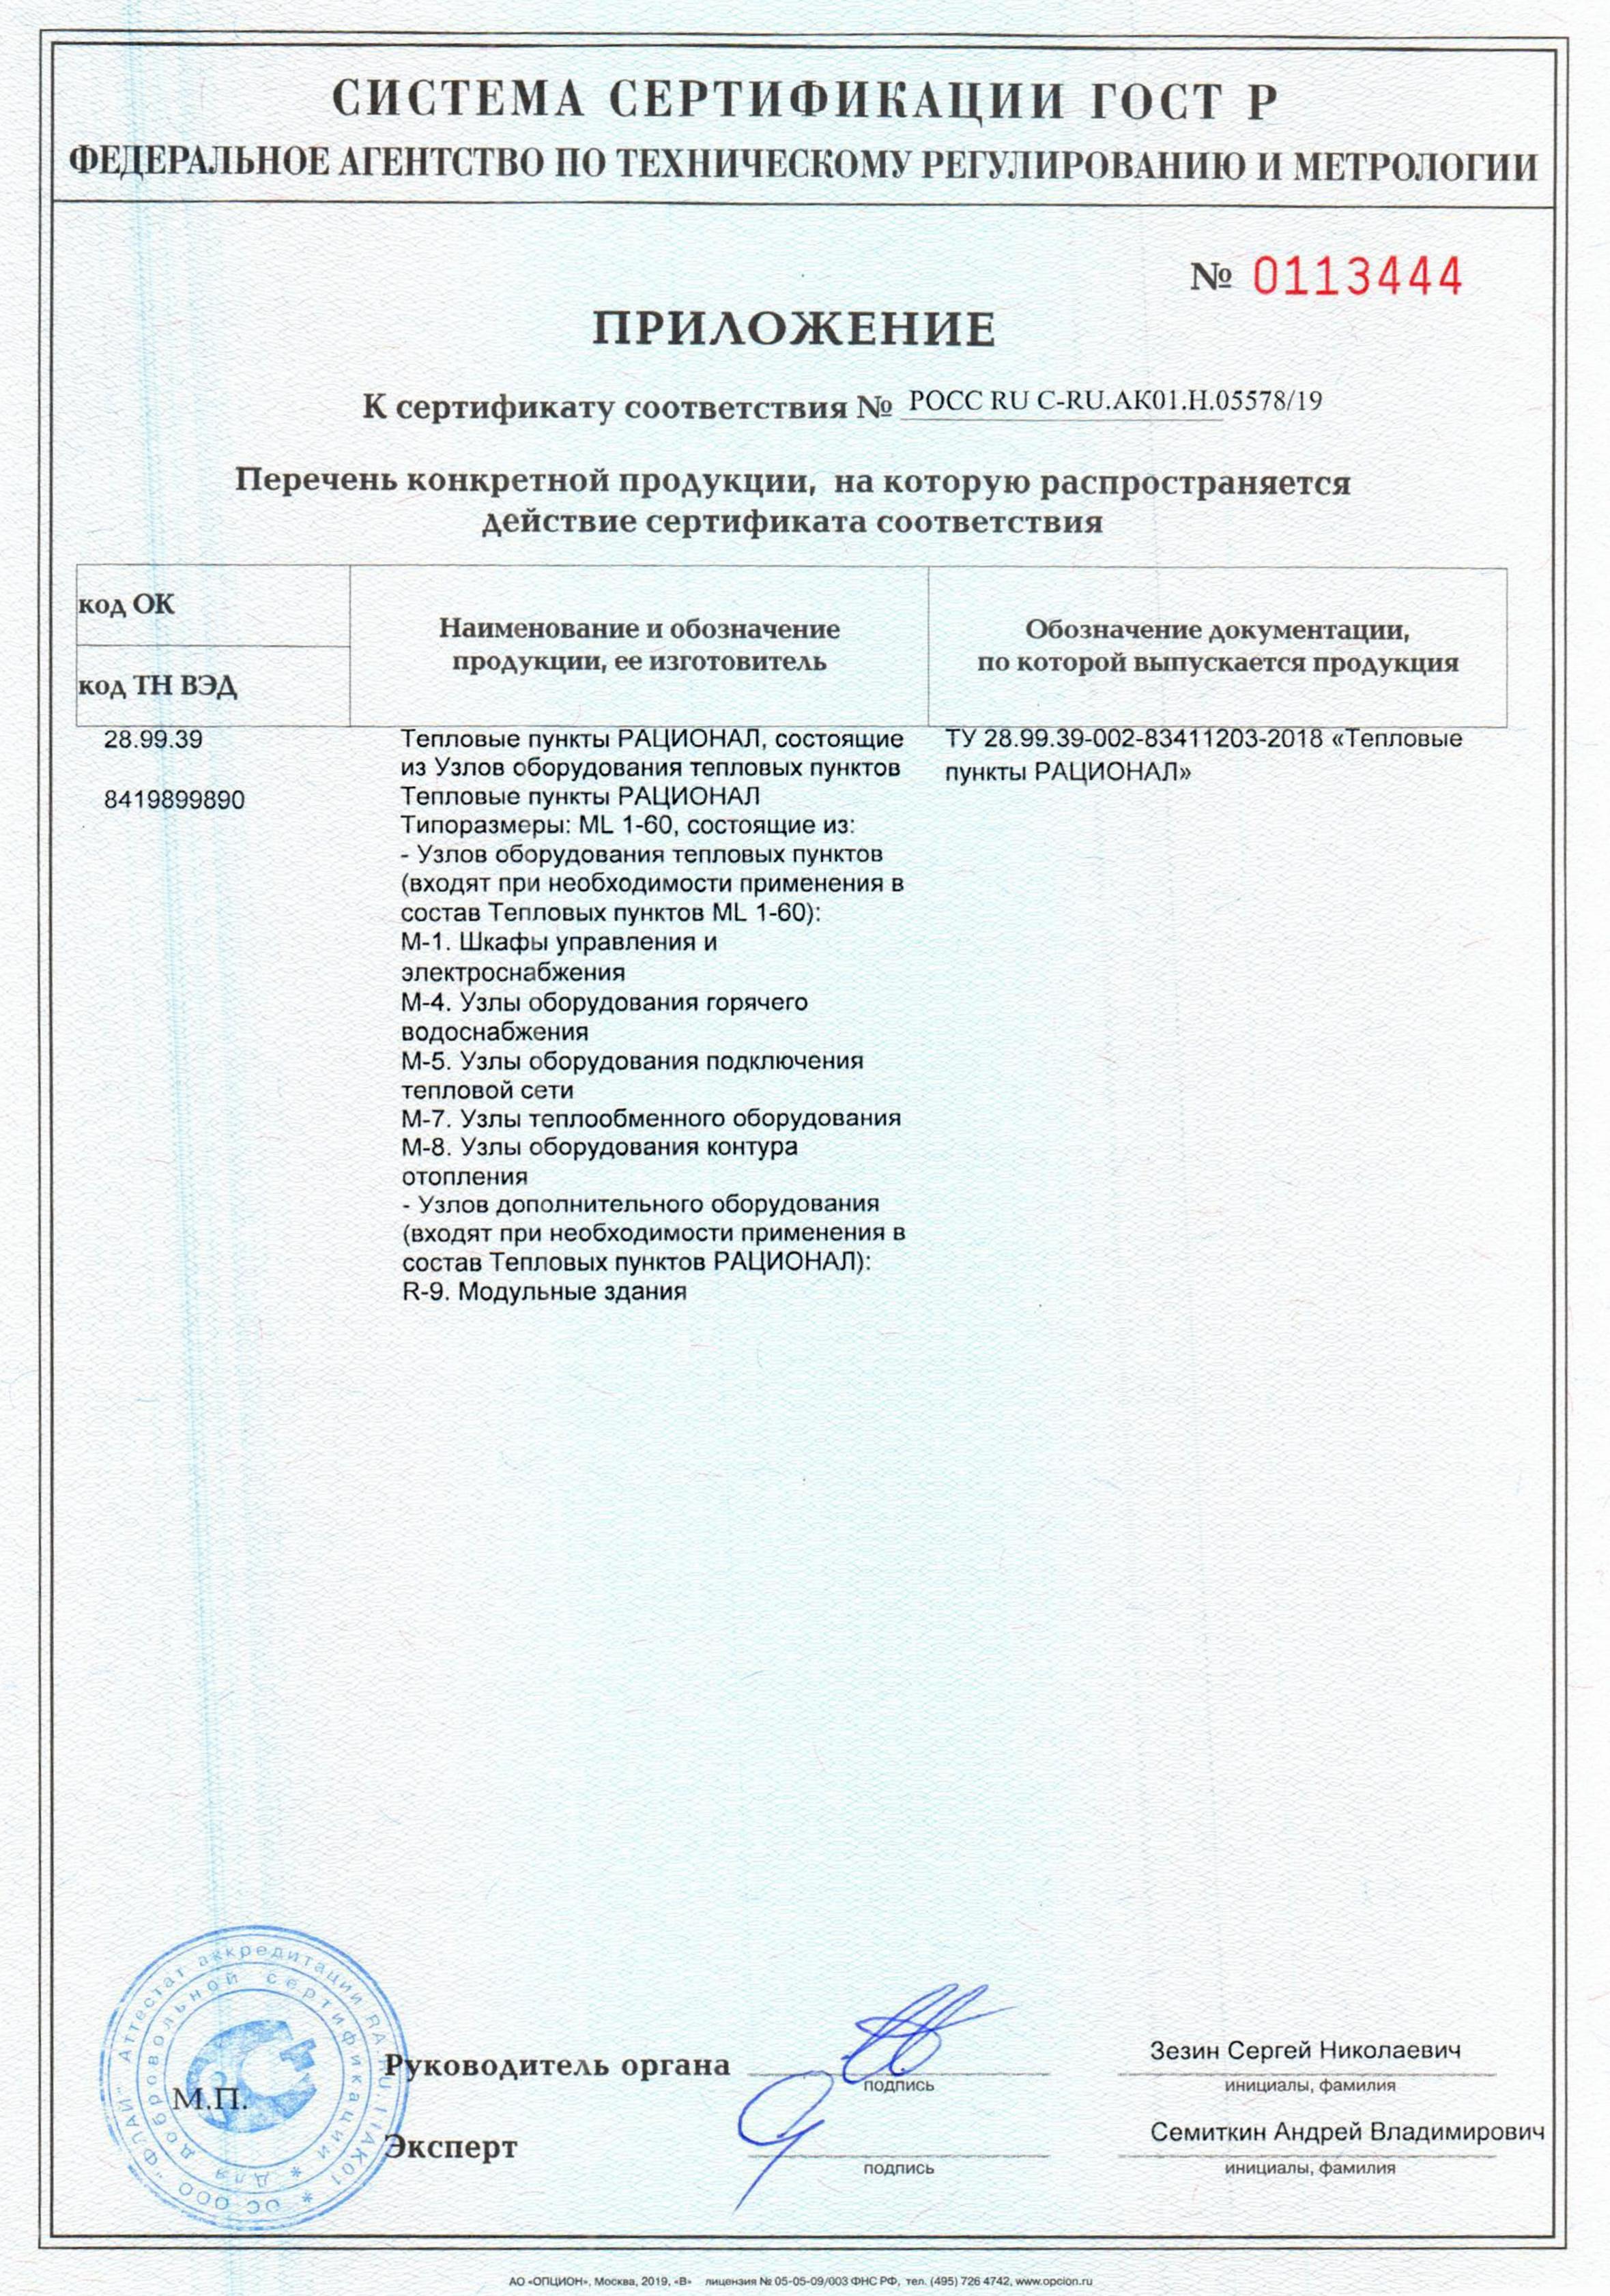 Сертификат на производство Тепловых пунктов «РАЦИОНАЛ»